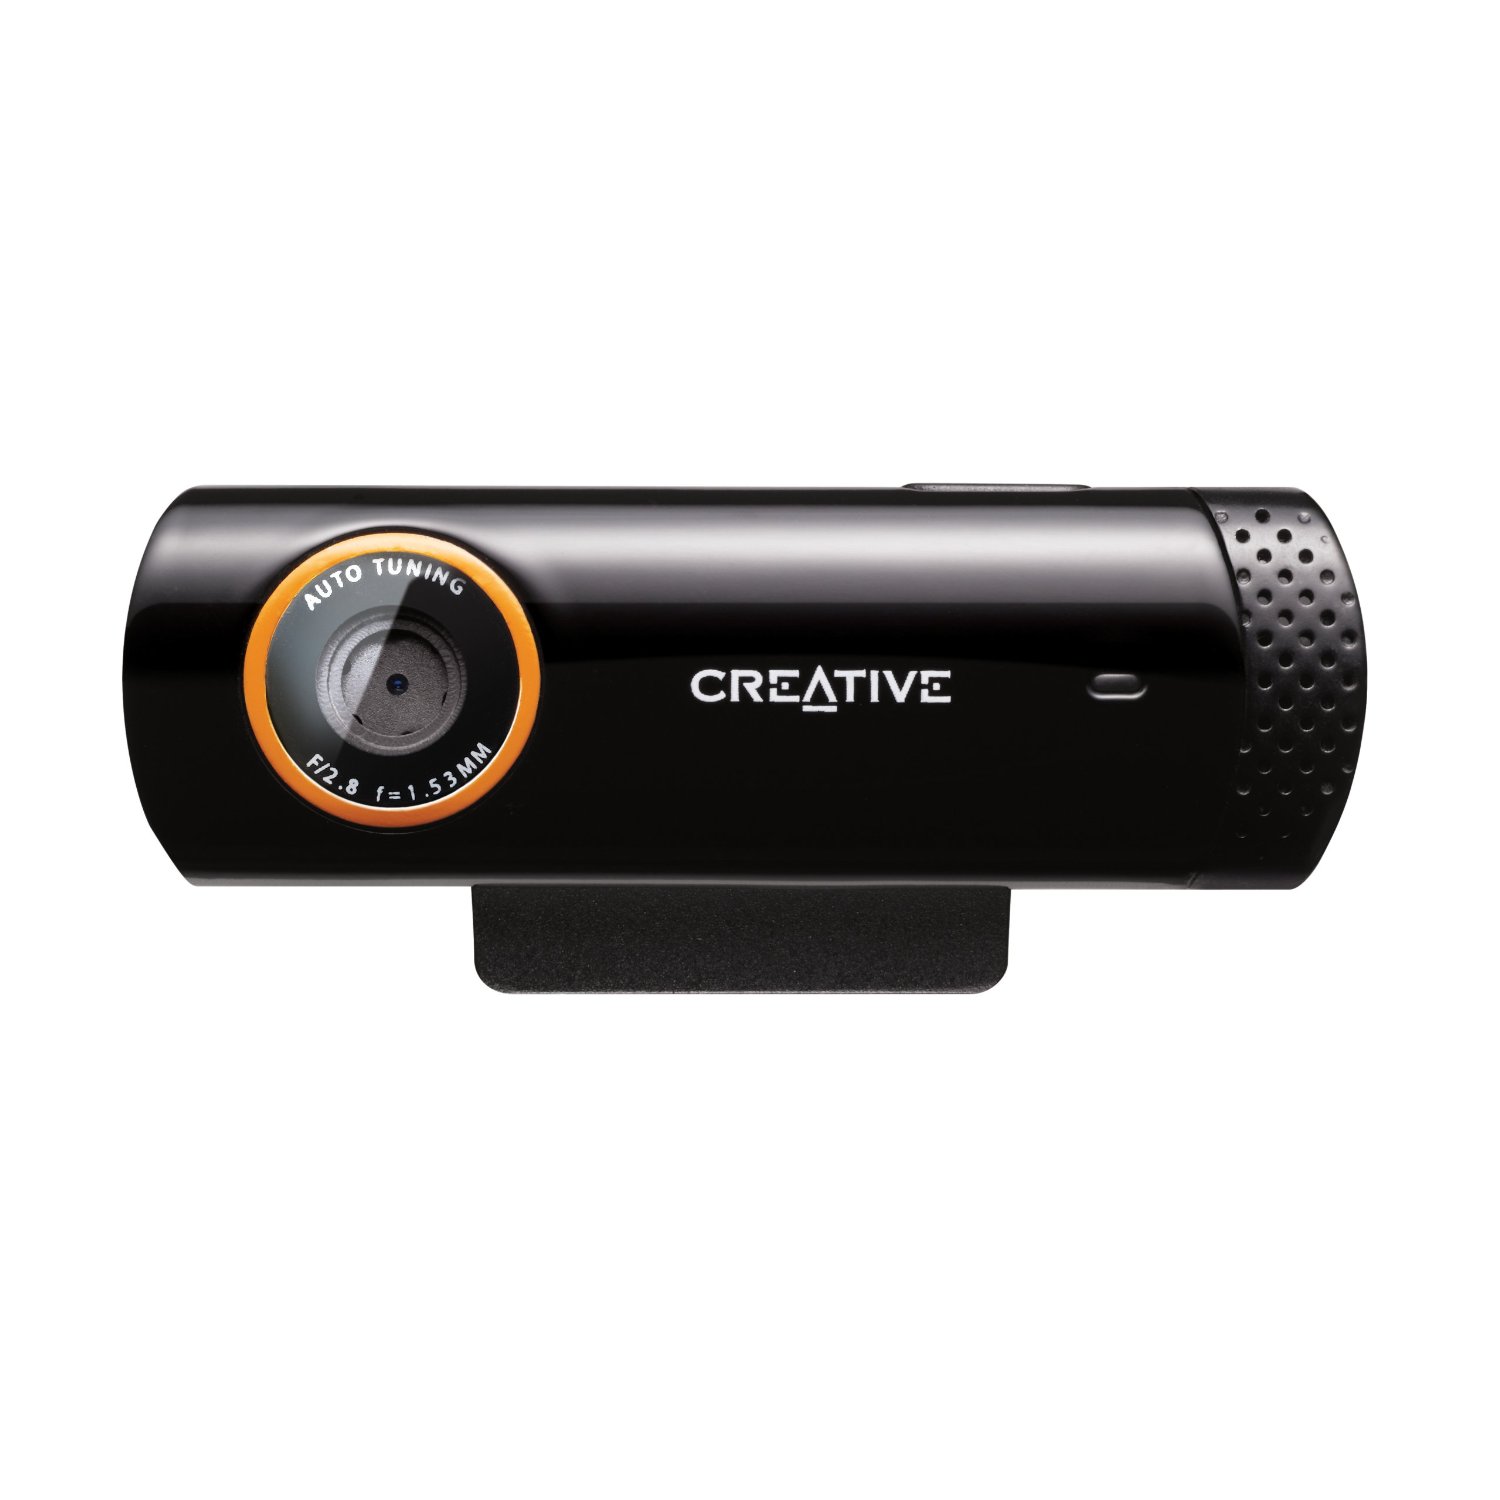 Creative Live! Cam Socialize VGA,1.3MP Webcam $19.99